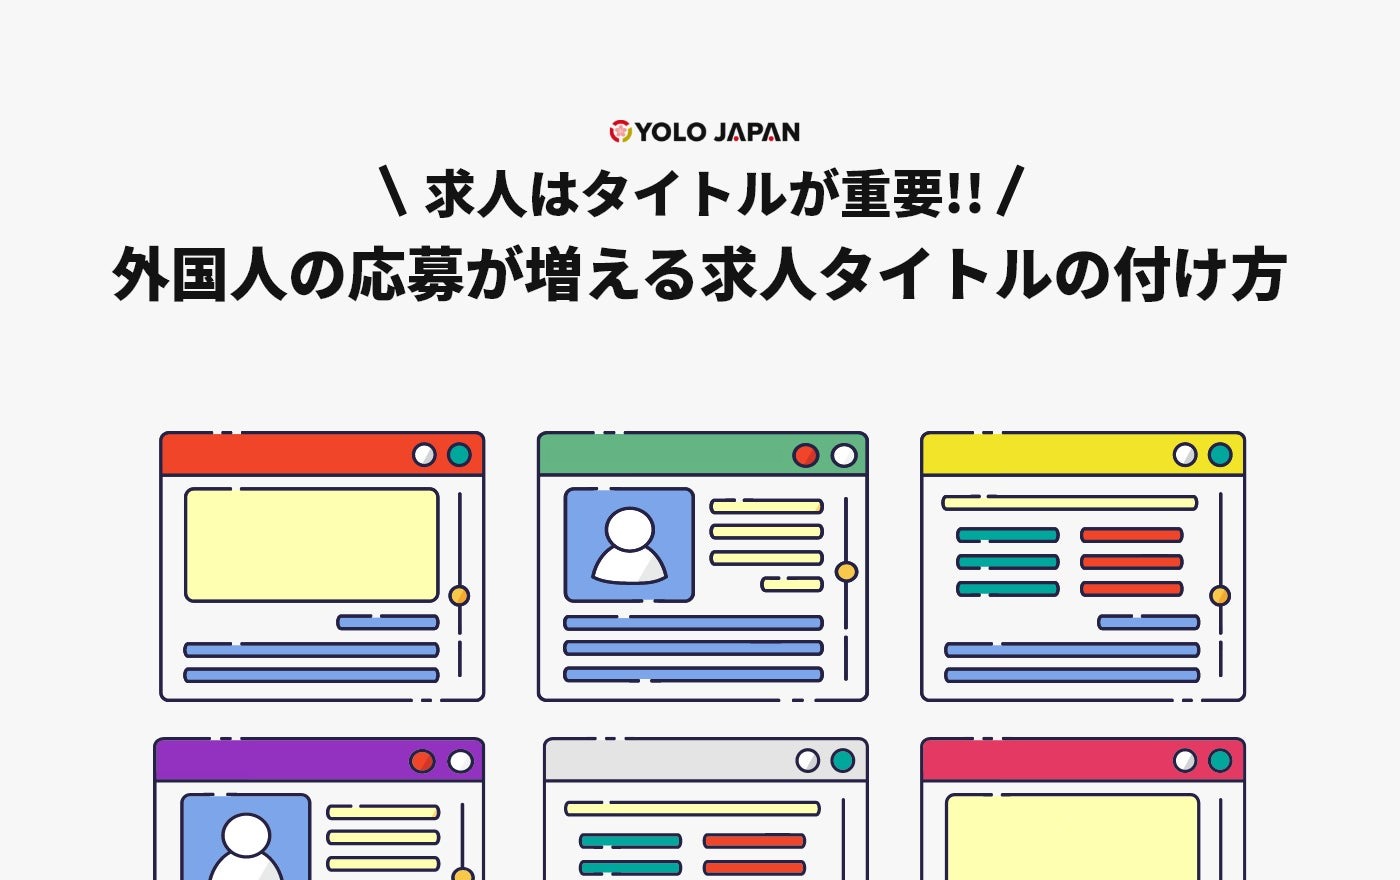 YOLO JAPAN、「外国人の応募が増える求人タイトルの付け方」公開